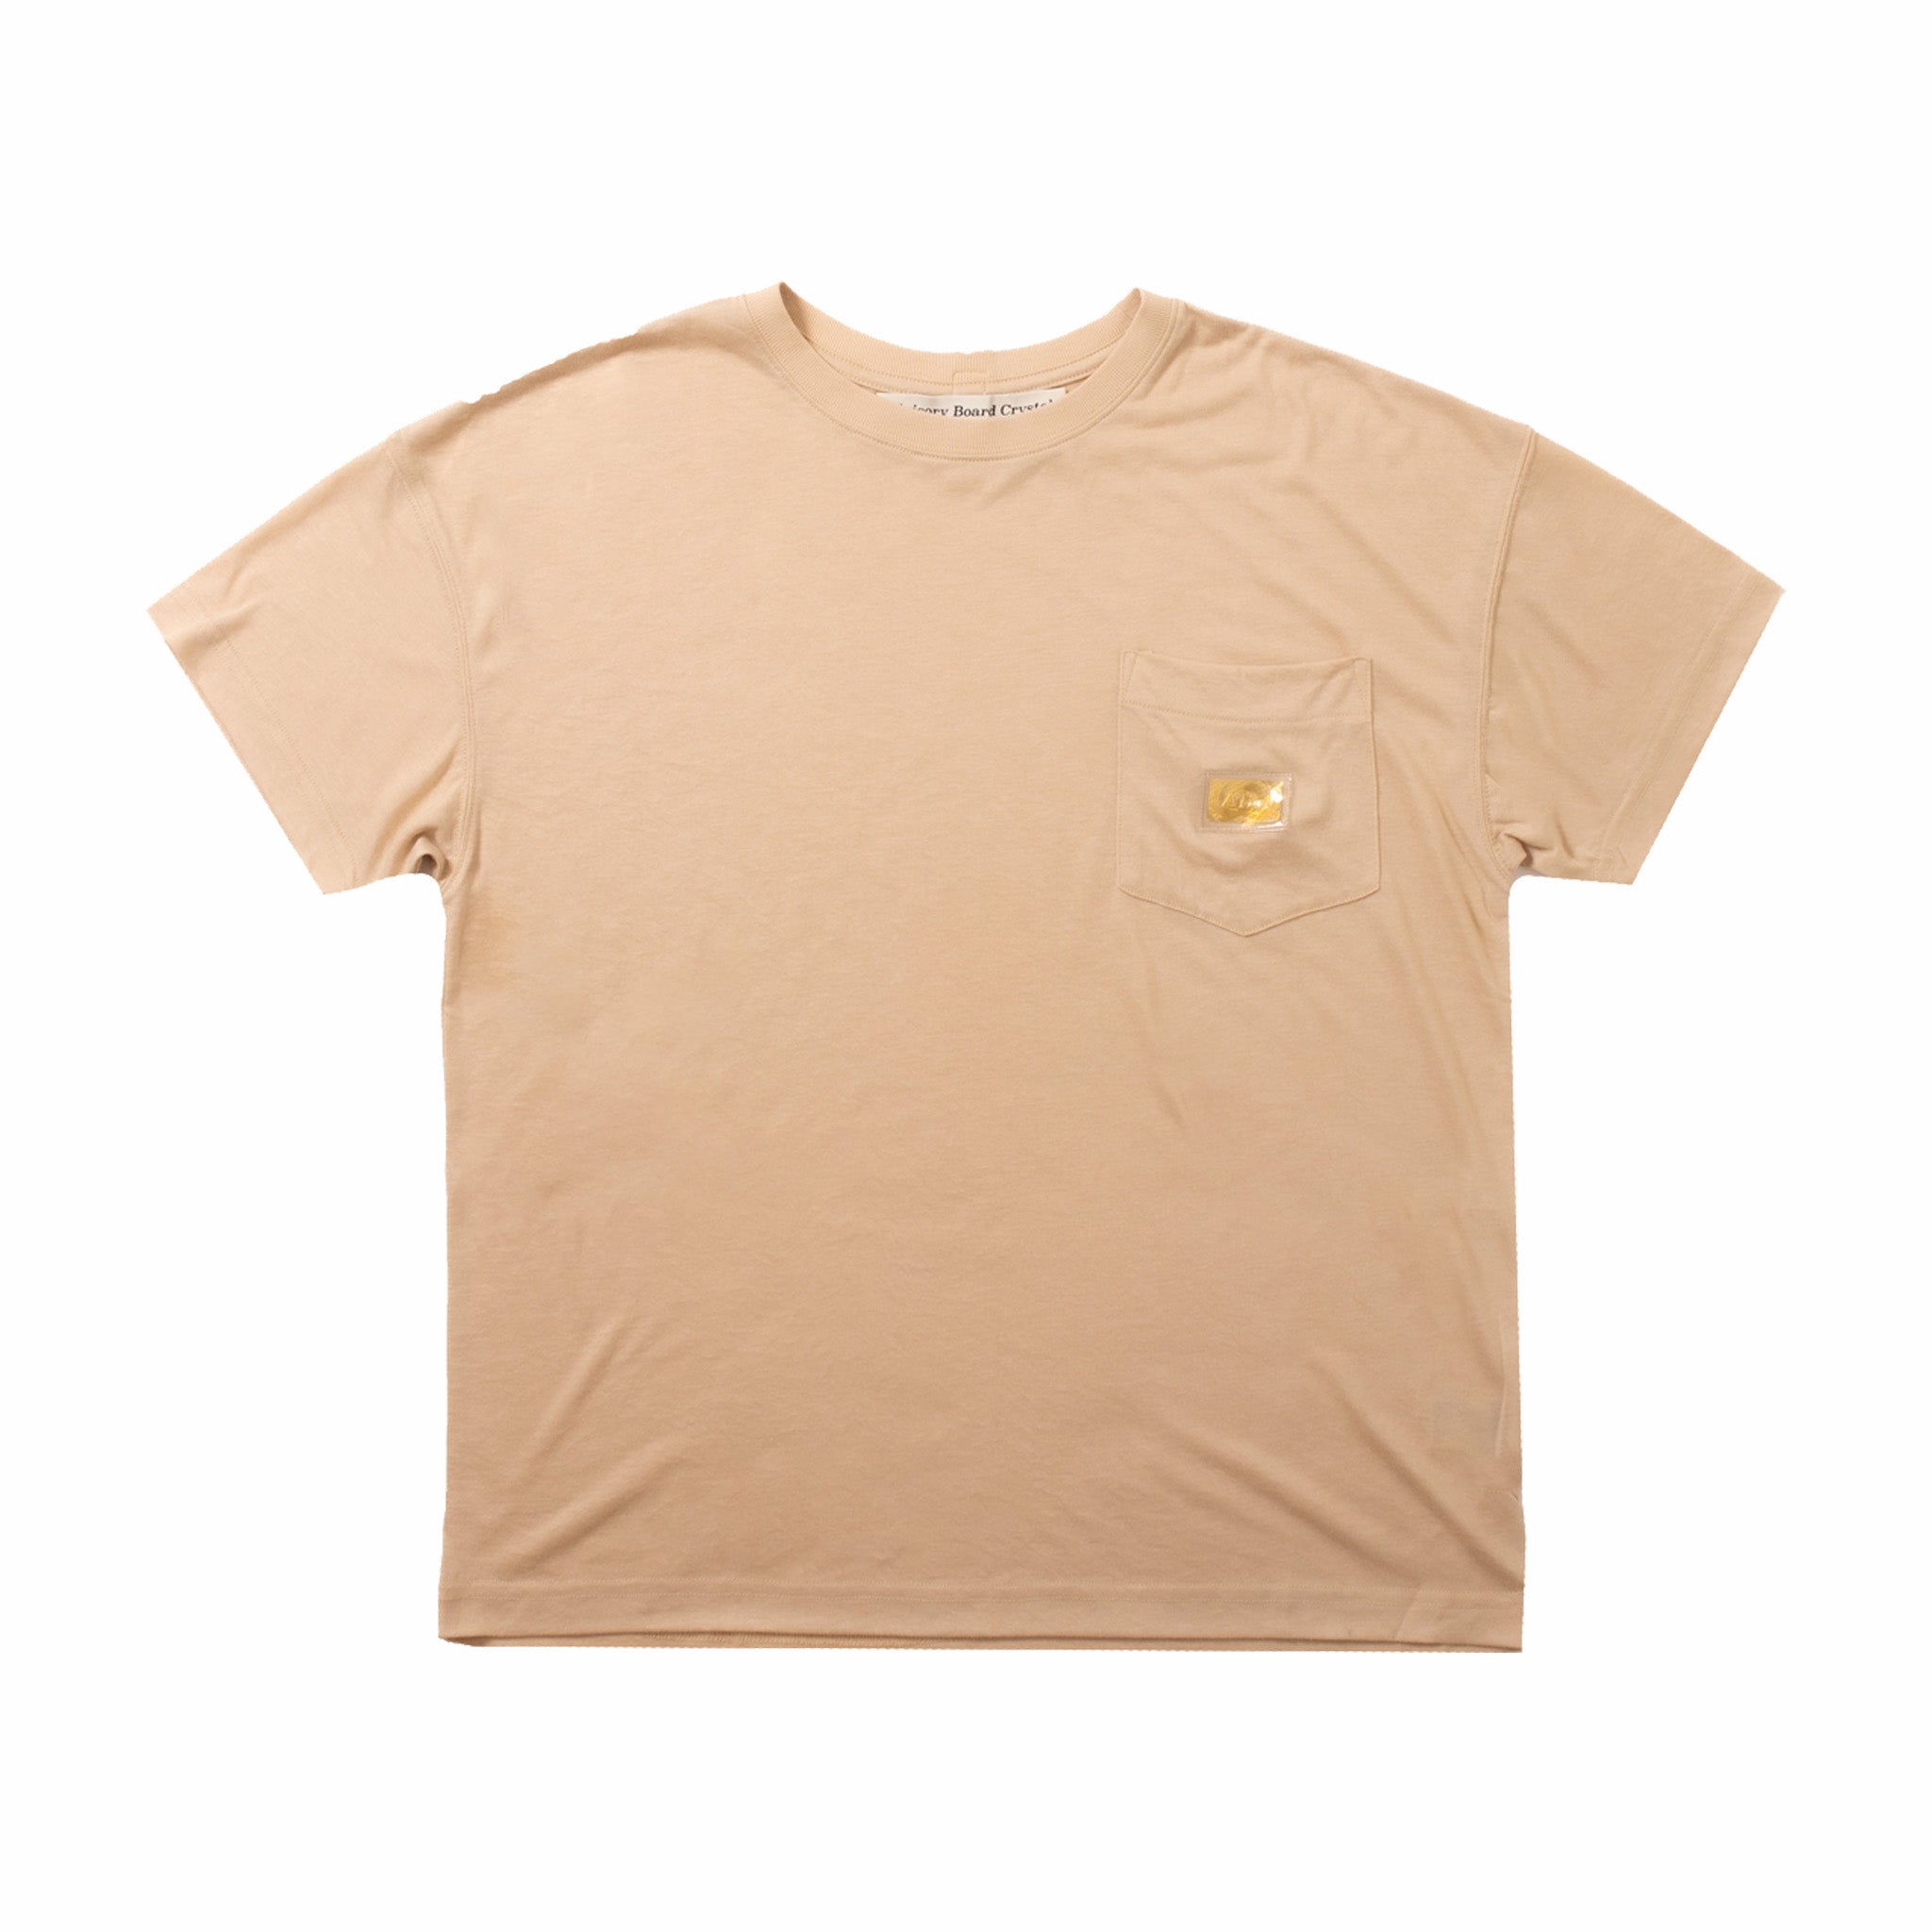 Abc. 123. Lightweight Pocket T-Shirt (Feldspar Ecru) - August Shop